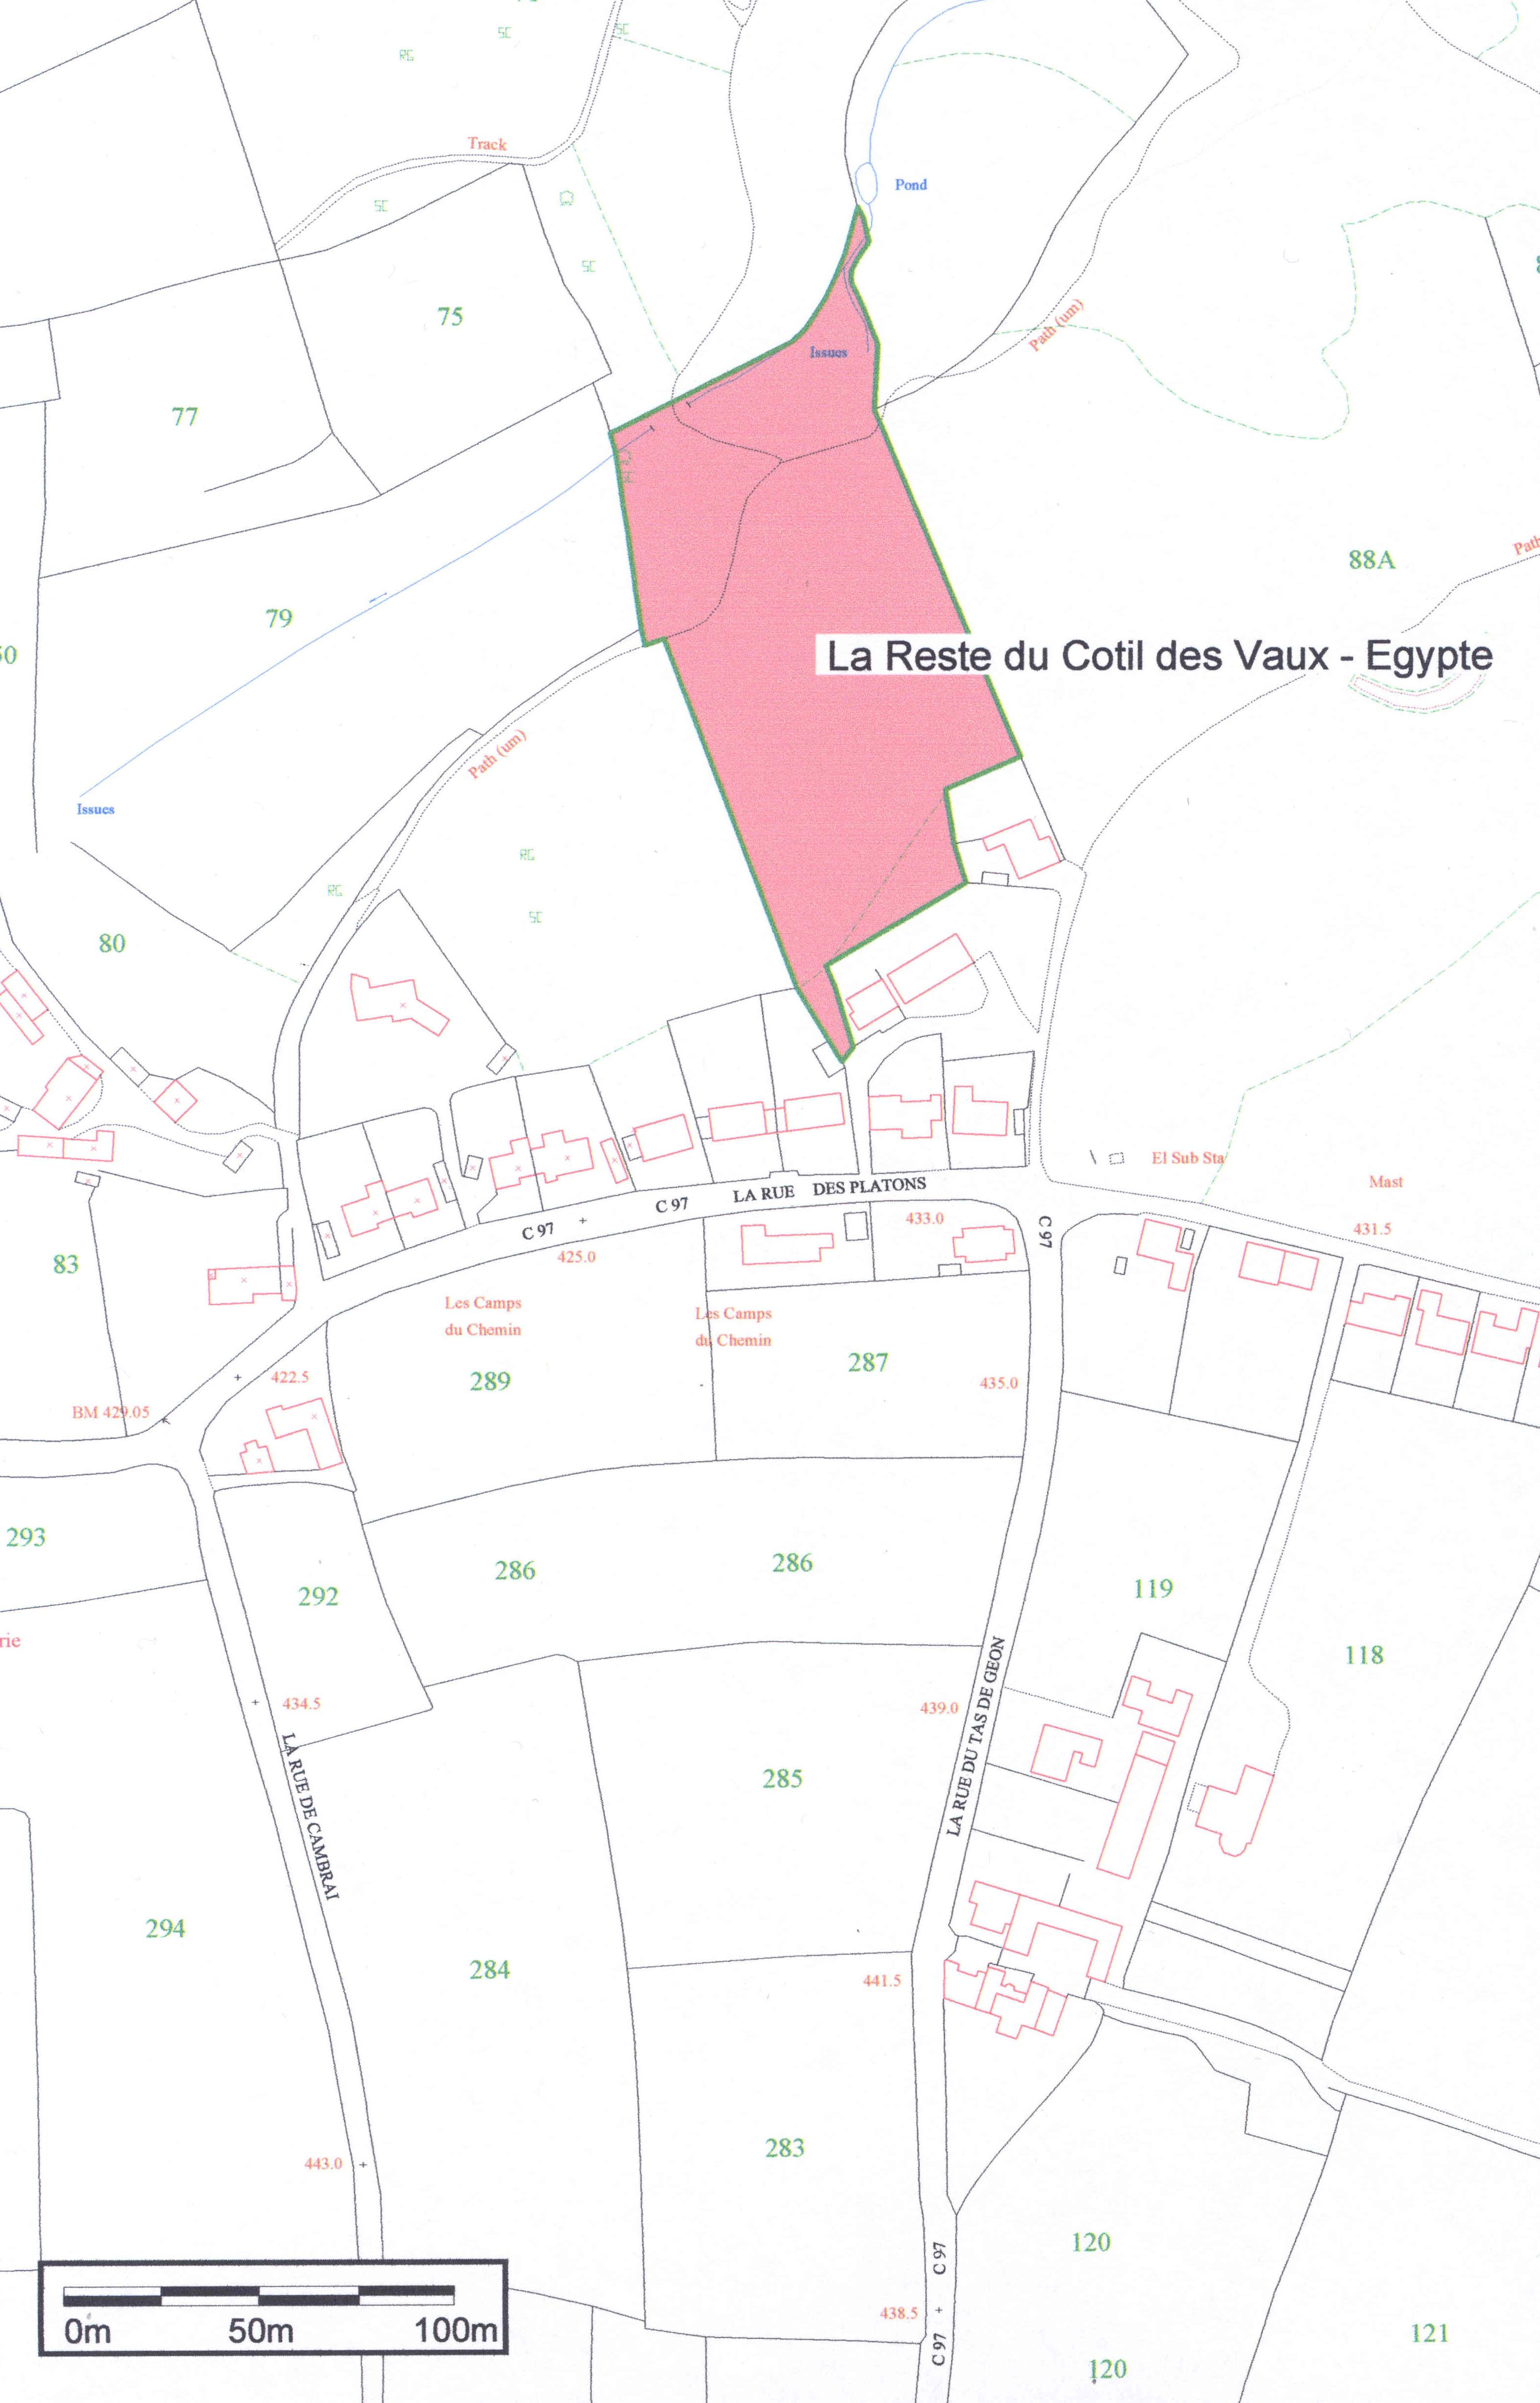 Part 4 - map of La Reste du Cotil des Vaux - Egypte